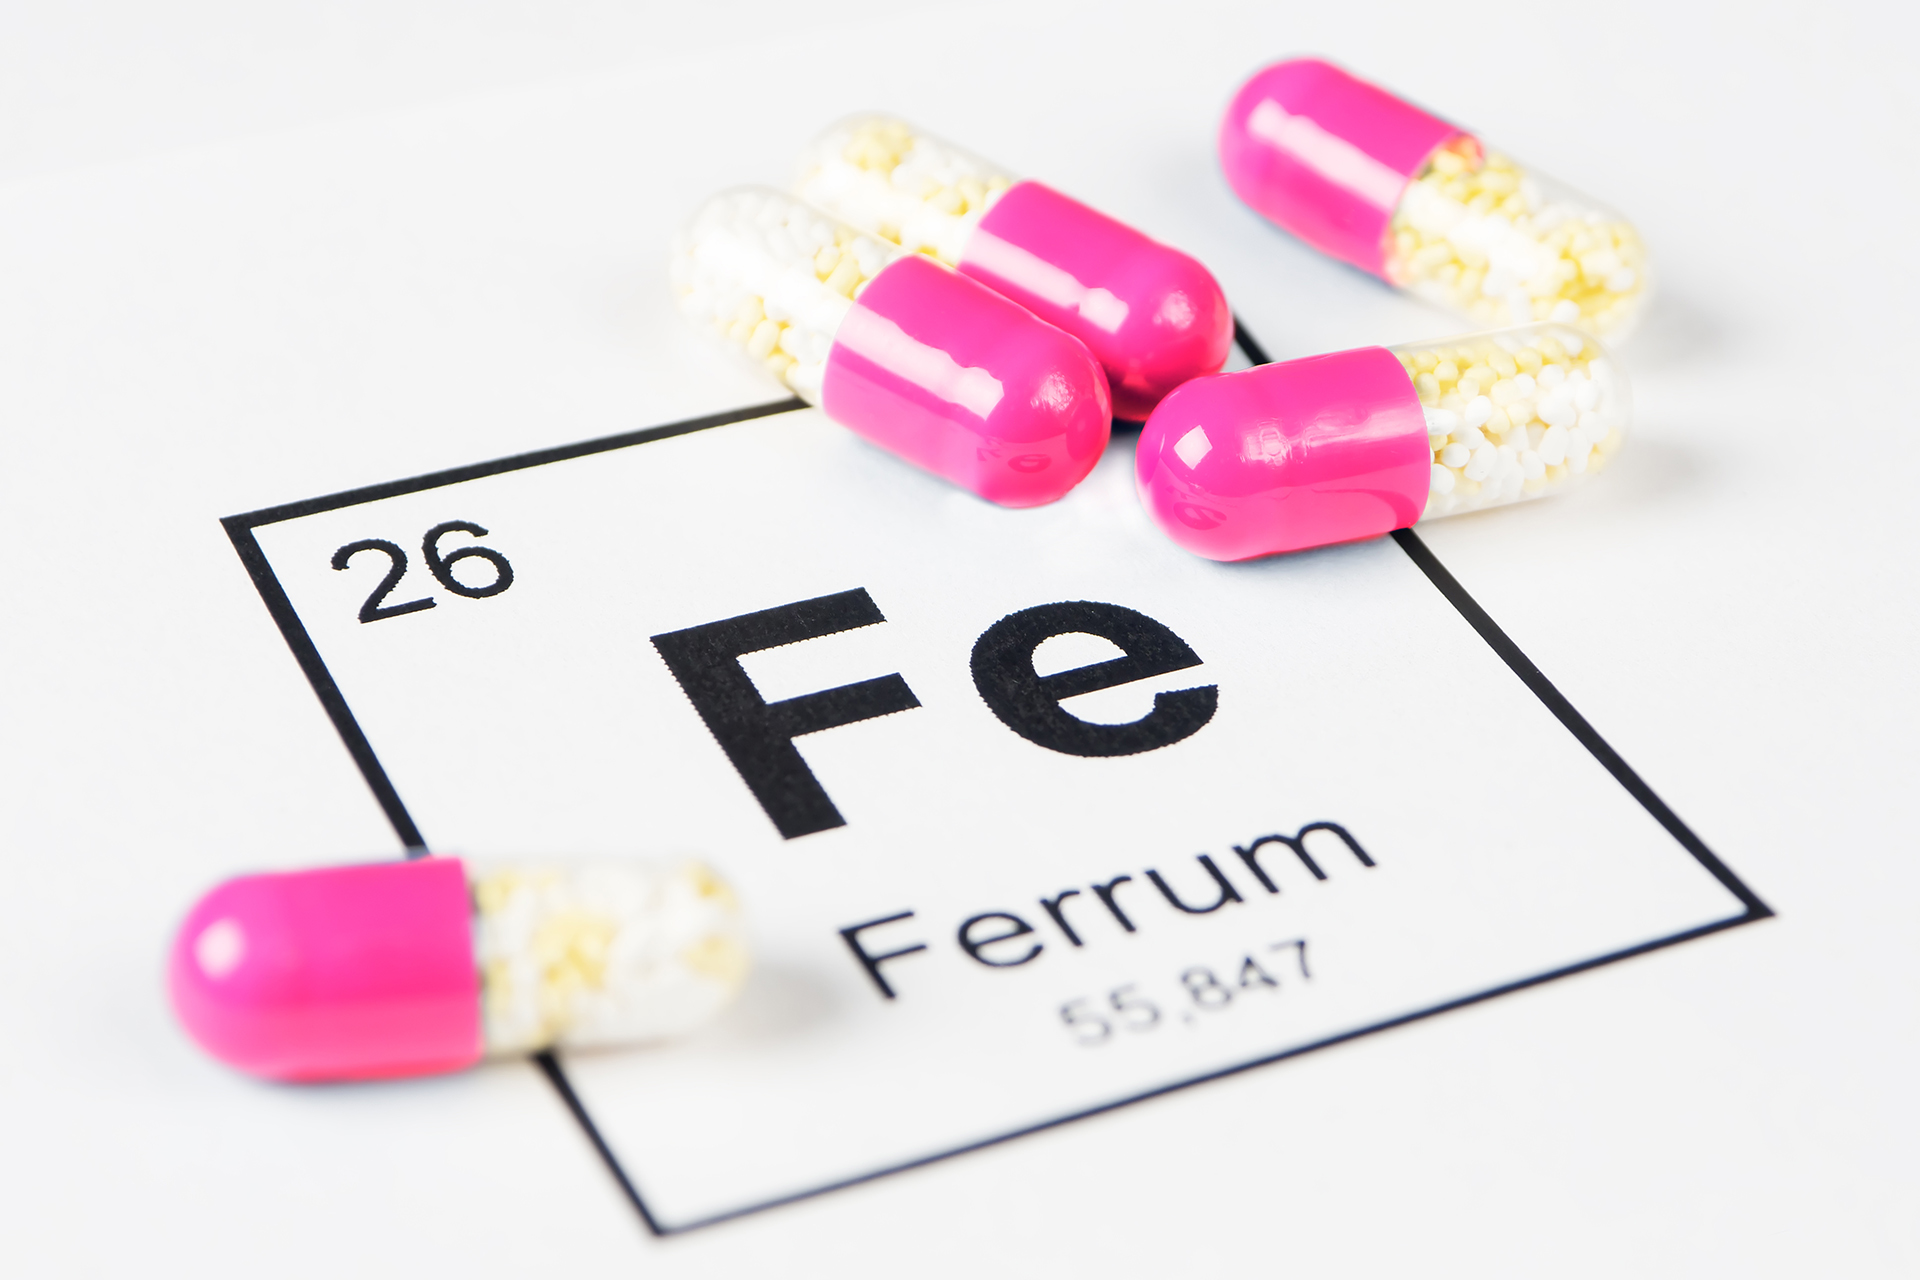 Scientic table Fe (Ferrum) to represent Iron